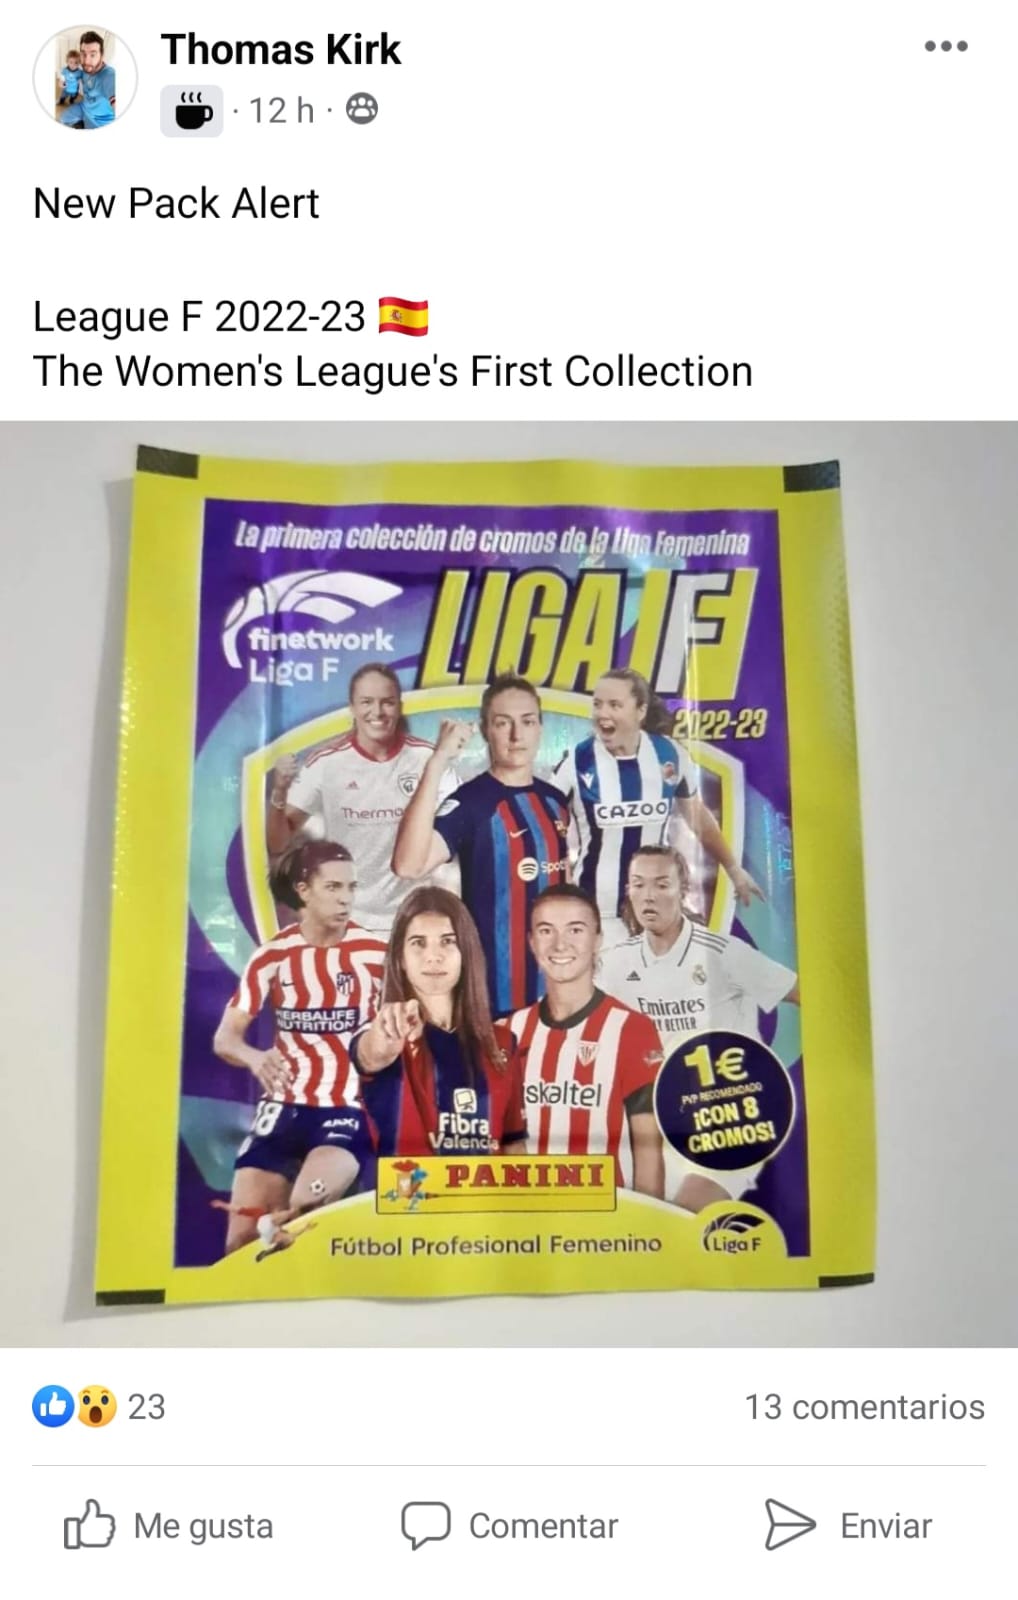 La Liga F presenta la colección de cromos para la temporada 2023-2024